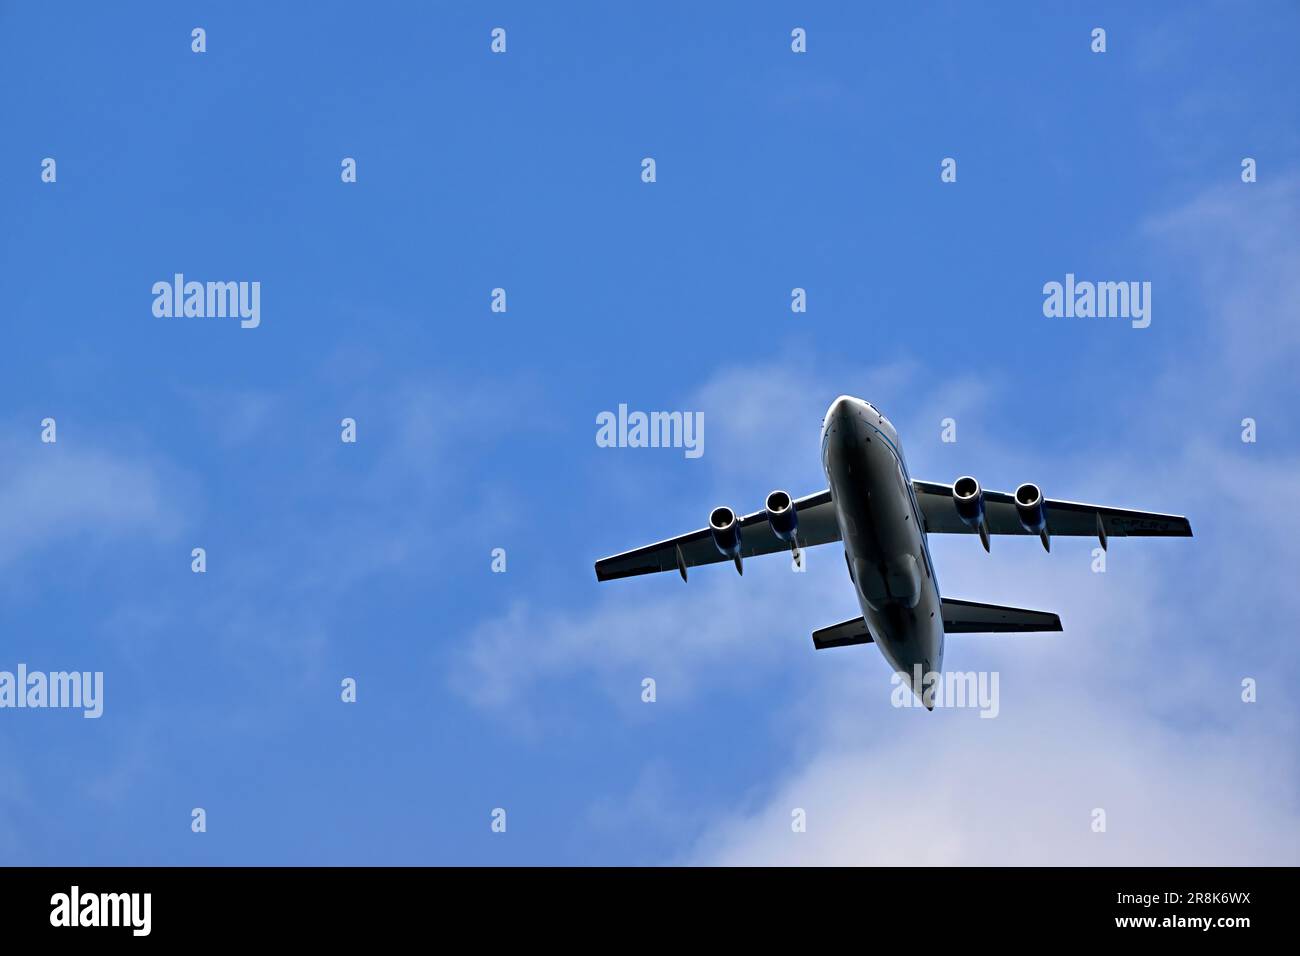 Un avion de transport de passagers volant dans un ciel rempli de nuages Banque D'Images